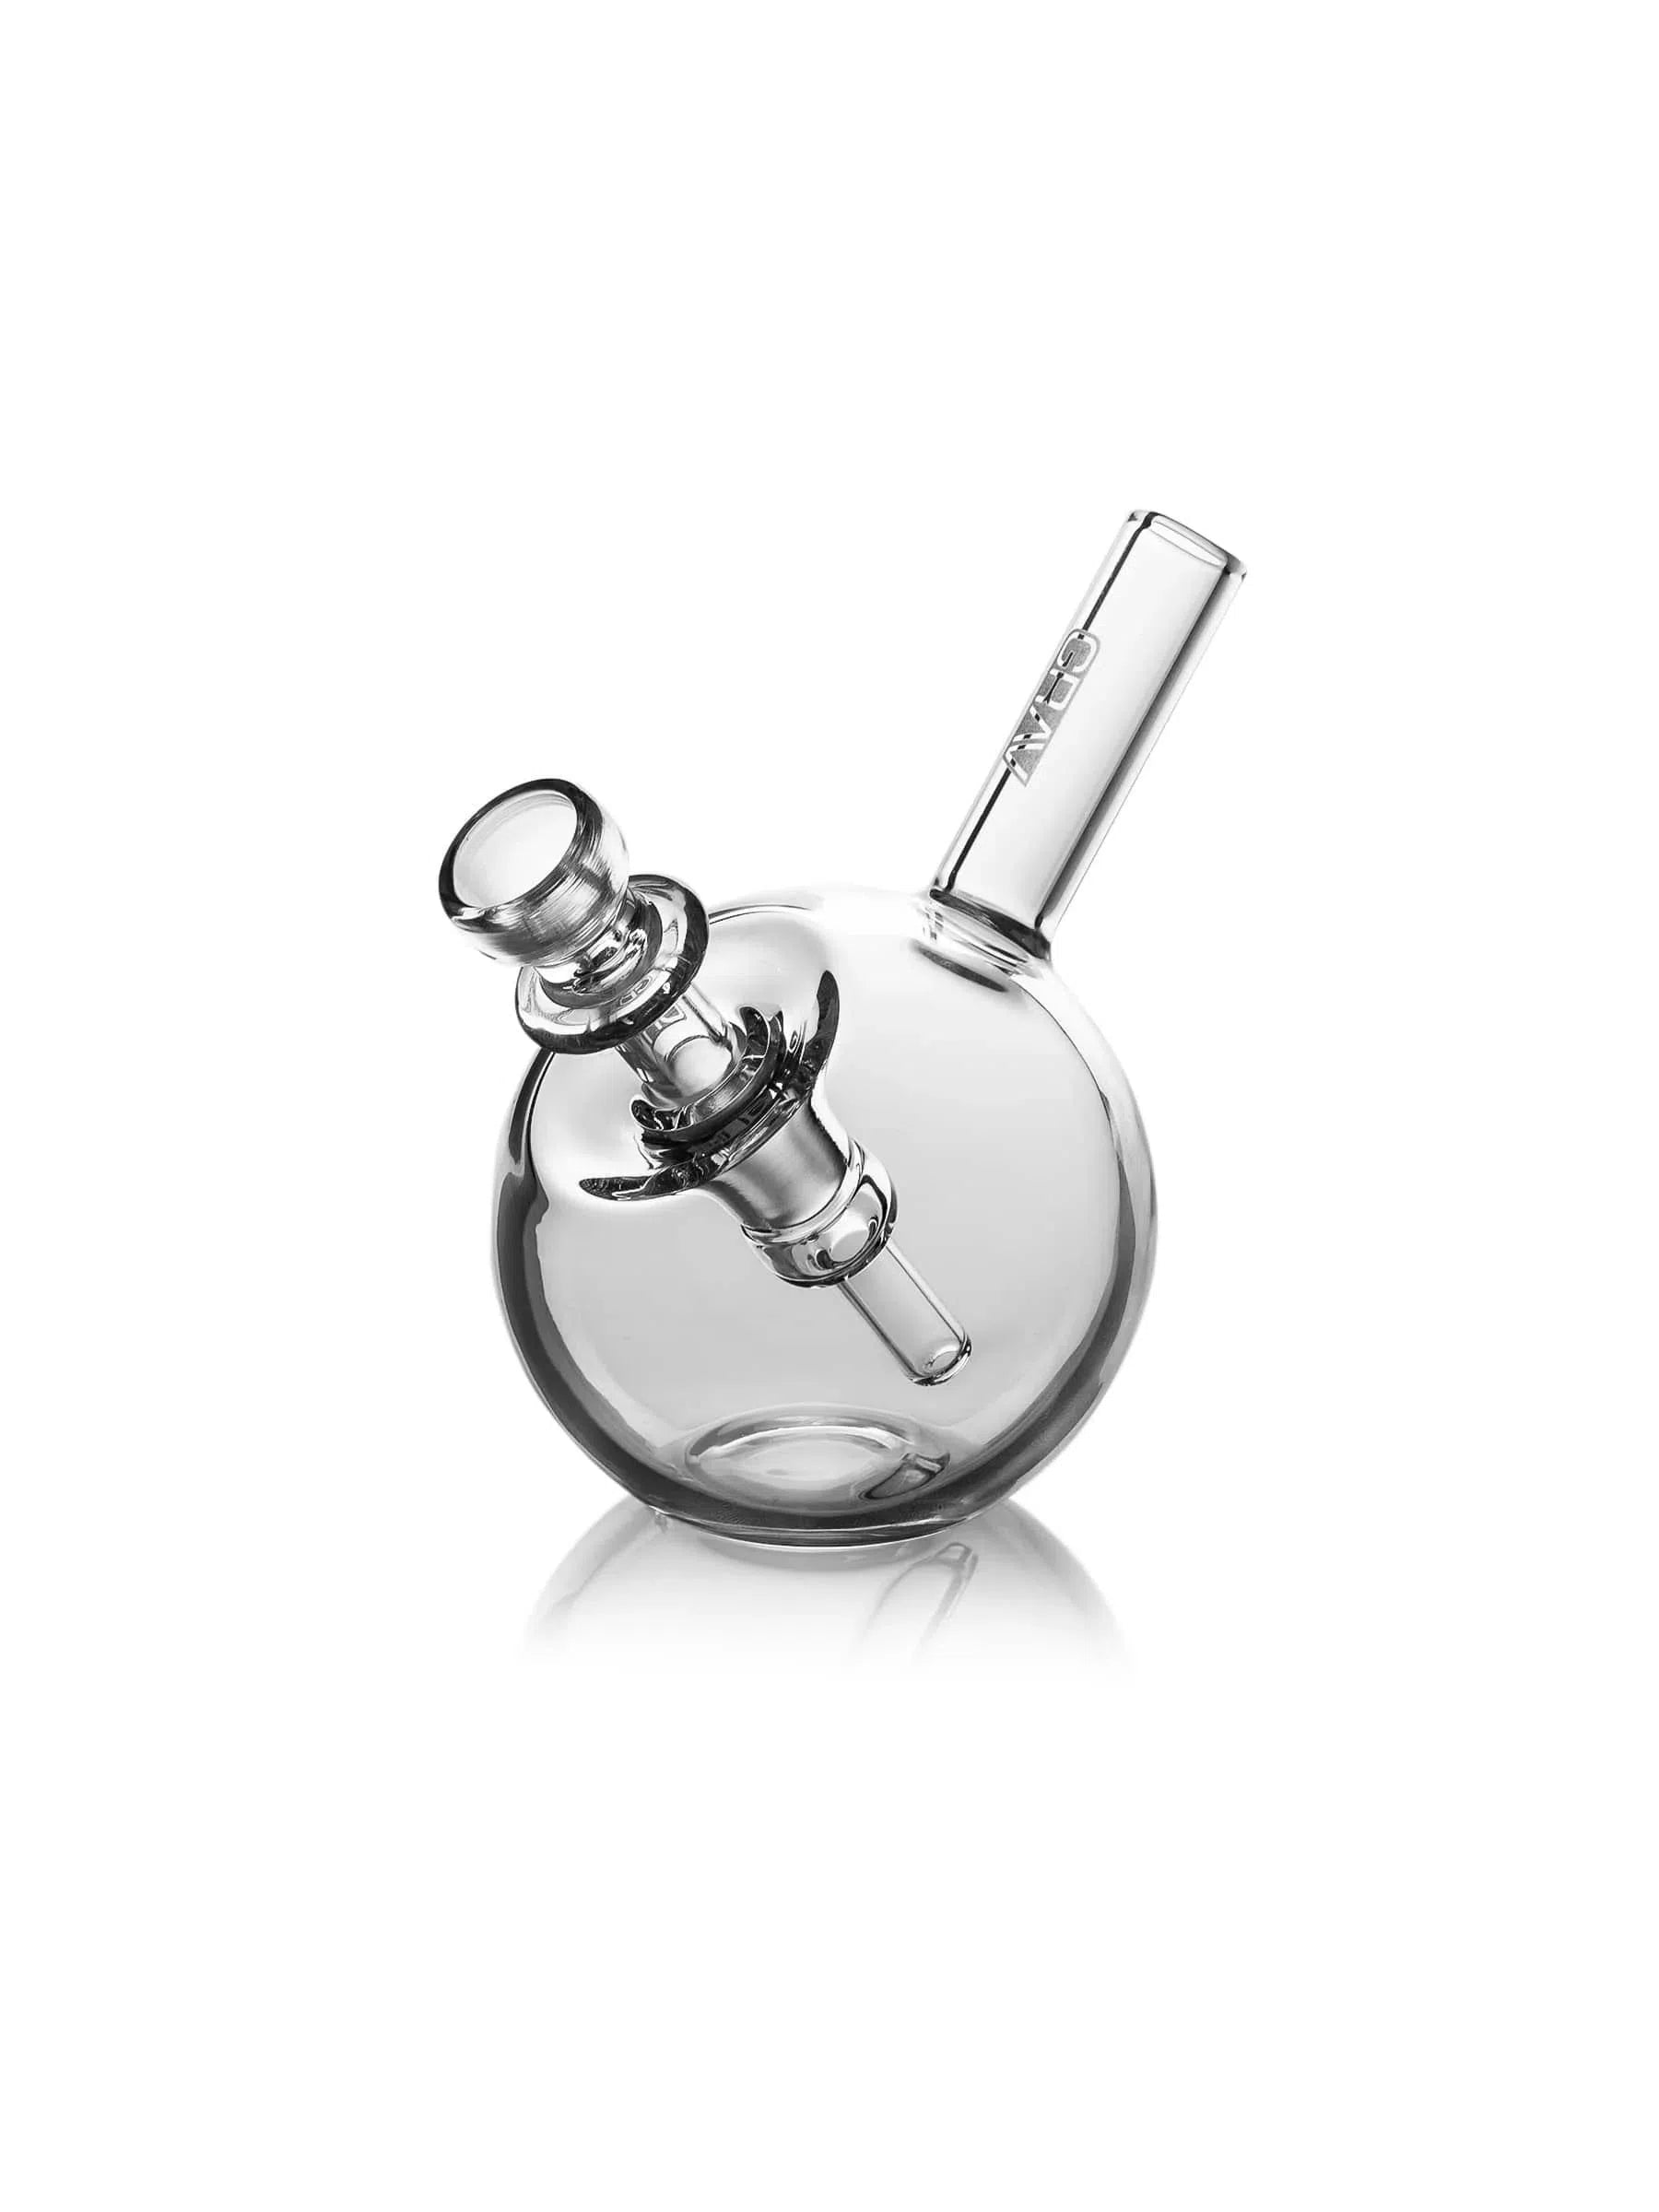 GRAV® Spherical Pocket Bubbler-GRAV-Clear-NYC Glass